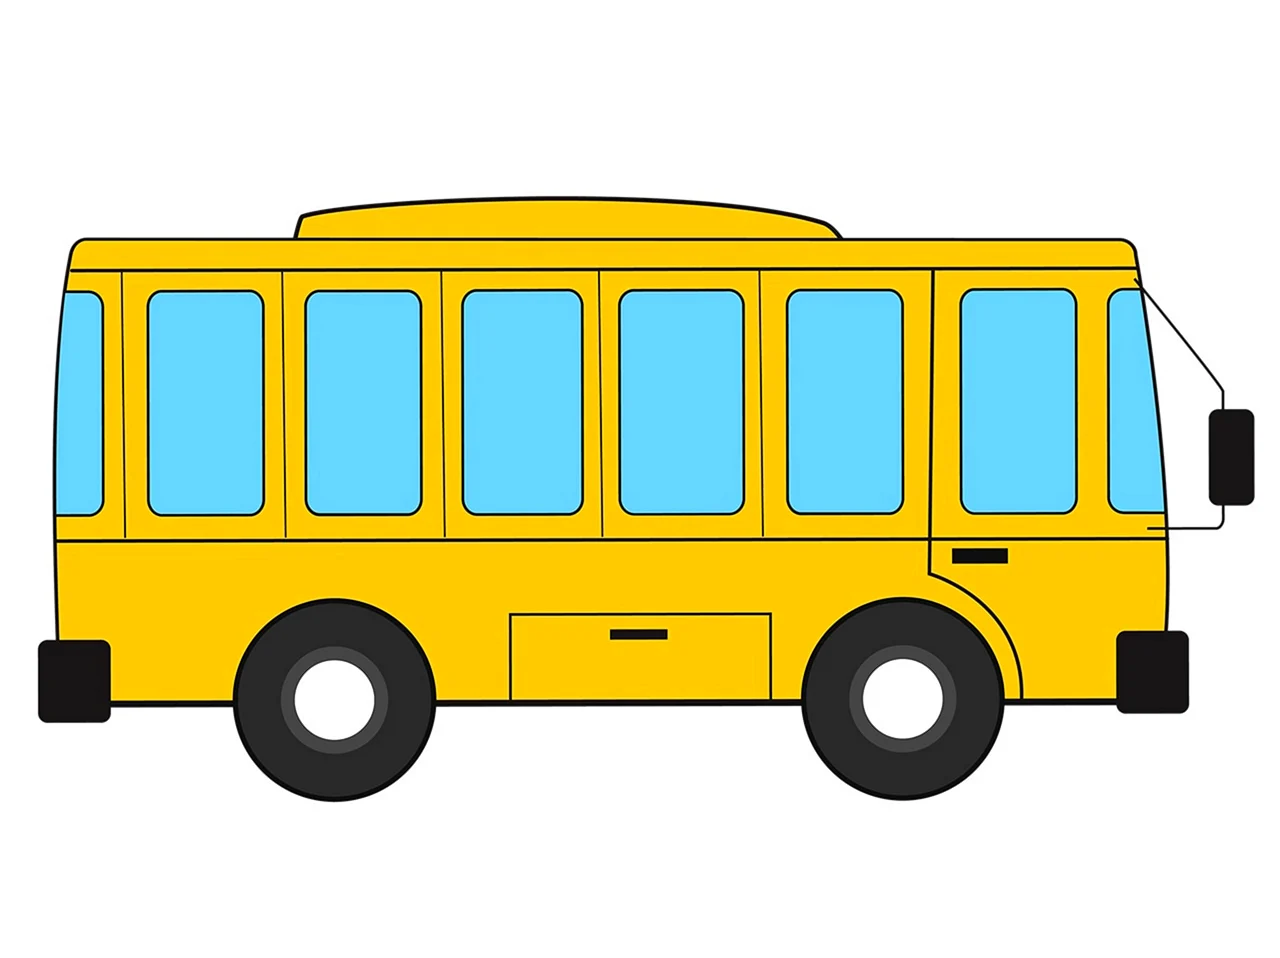 Автобус для детей. Картинка